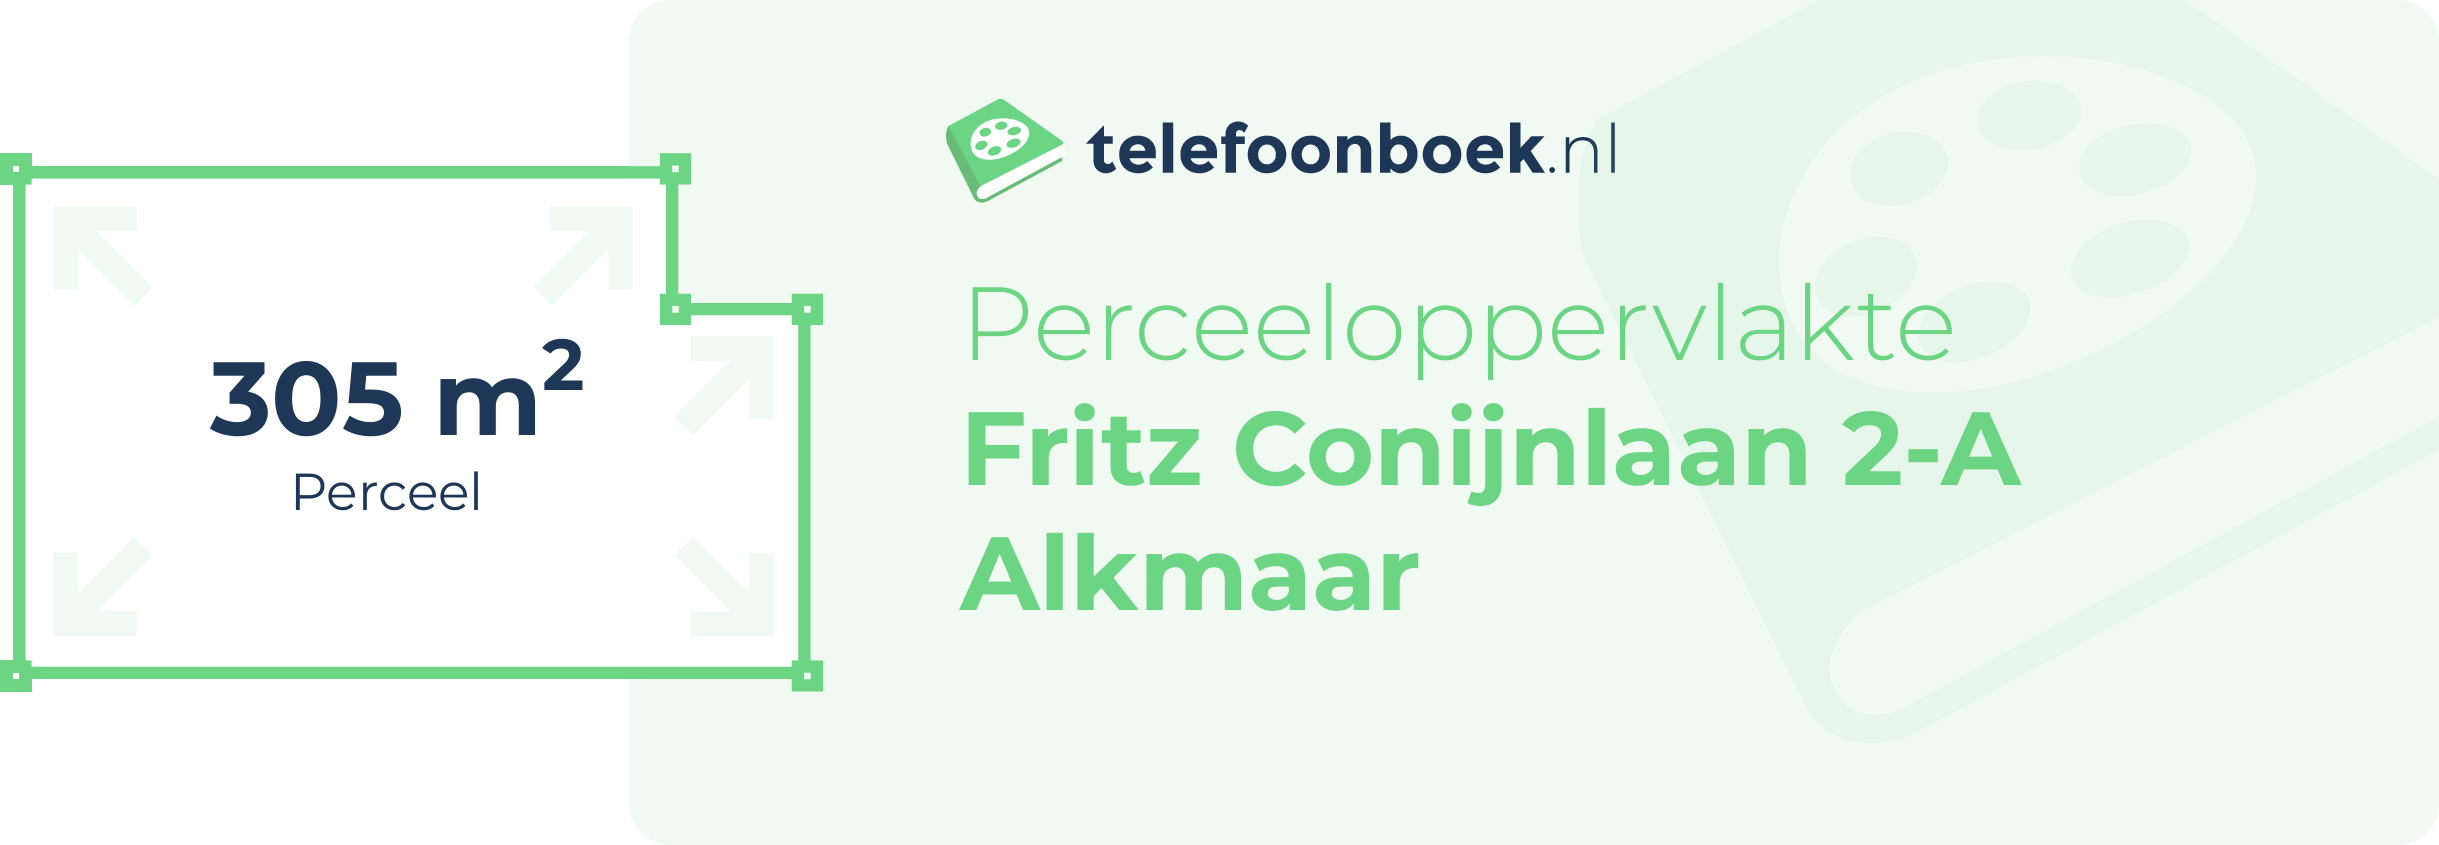 Perceeloppervlakte Fritz Conijnlaan 2-A Alkmaar